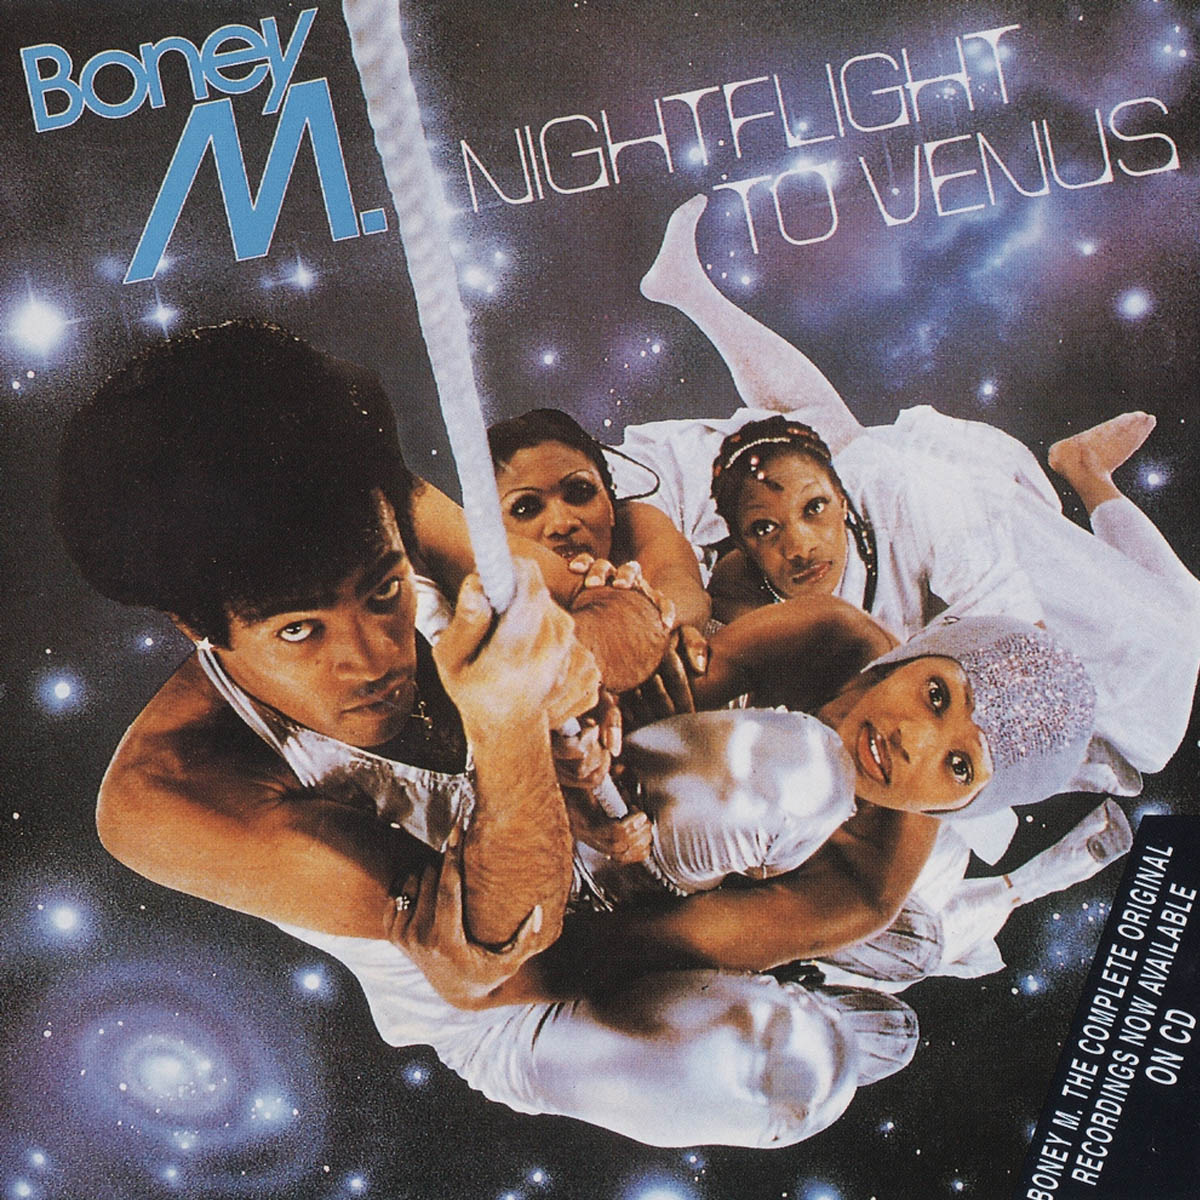 Обложка альбома «Nightflight to Venus» (1078) группы Boney M.